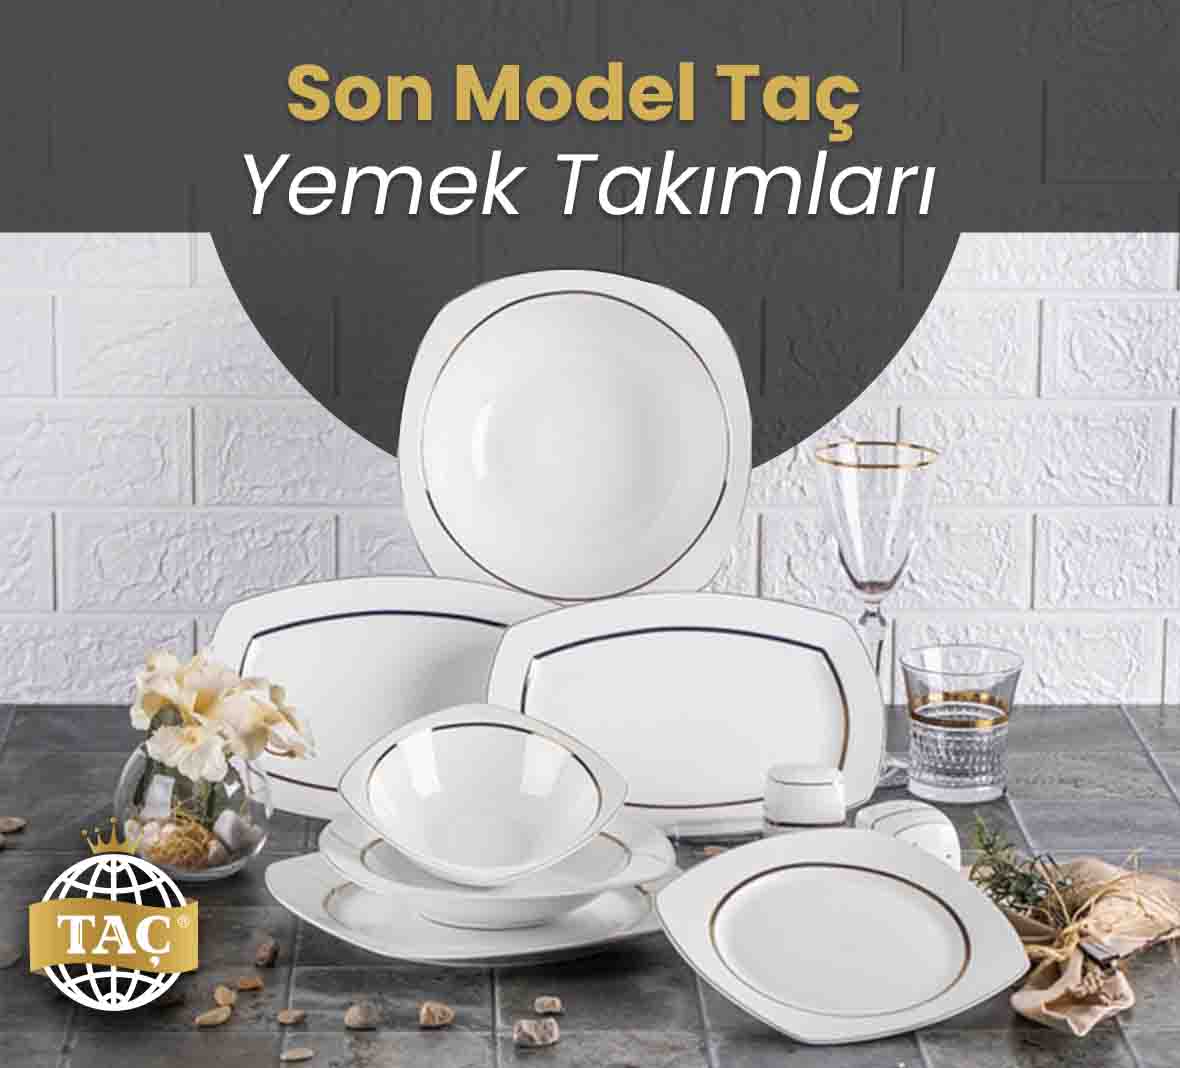 Son Model Taç Yemek Takımları - Tacev.com